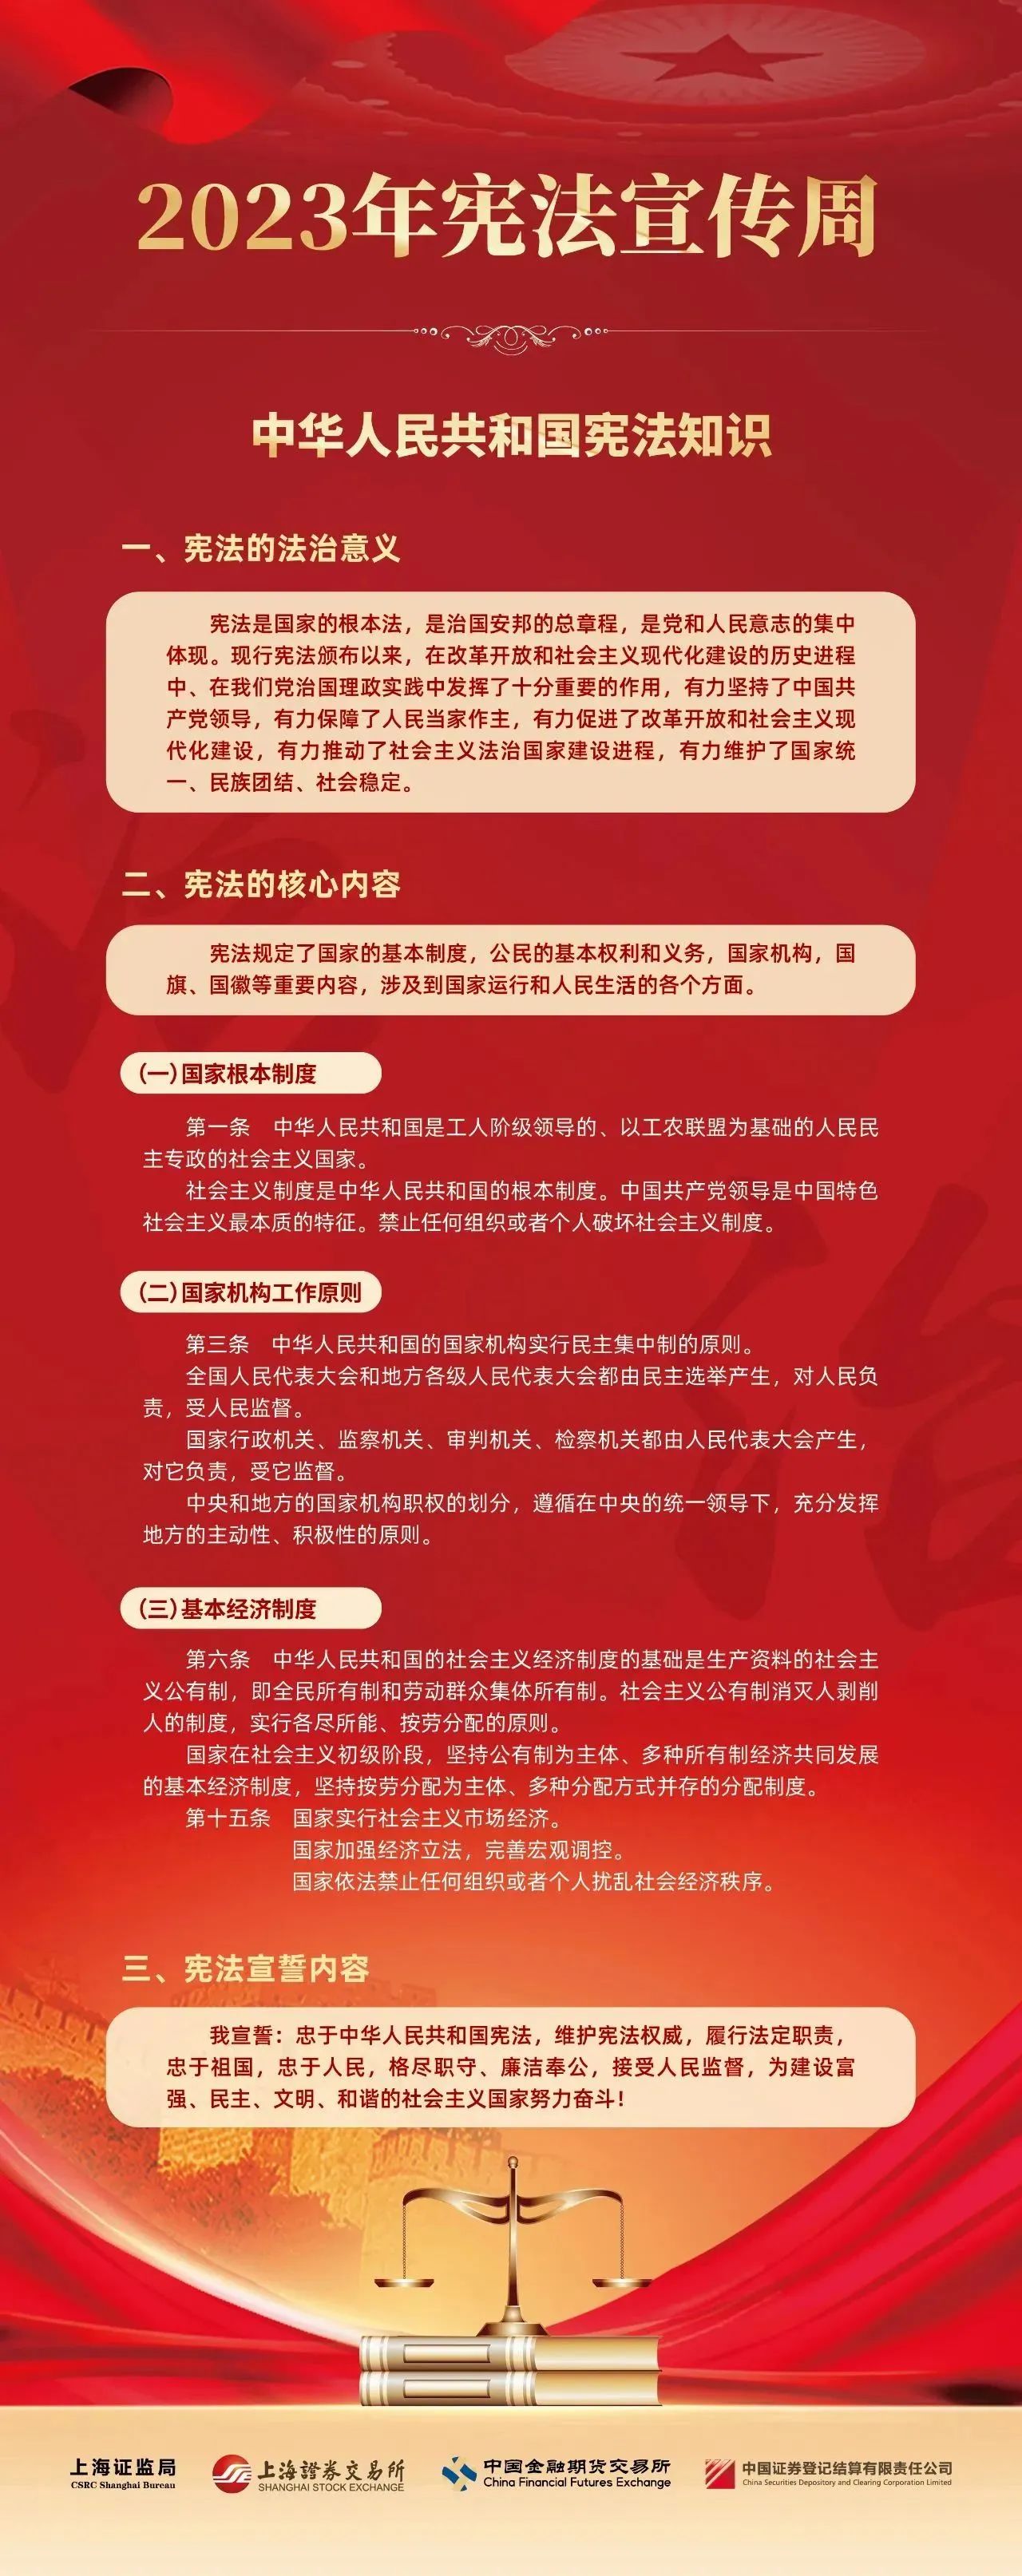 宪法宣传周-中华人民共和国宪法常识.jpg